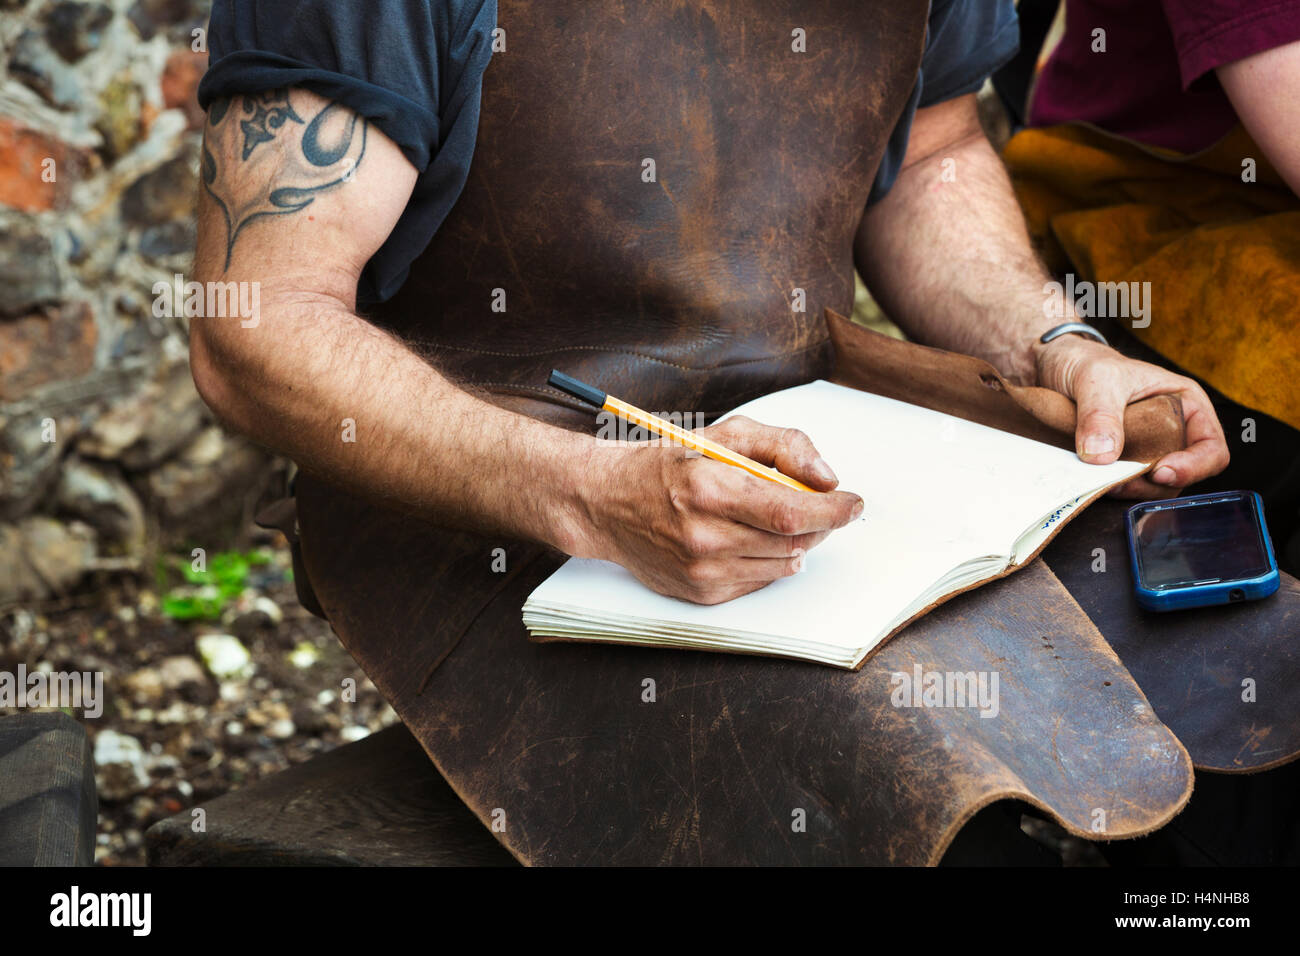 Deux personnes, un homme et une femme portant un tablier de cuir forgerons écrit dans un notebook assis dans un jardin. Banque D'Images